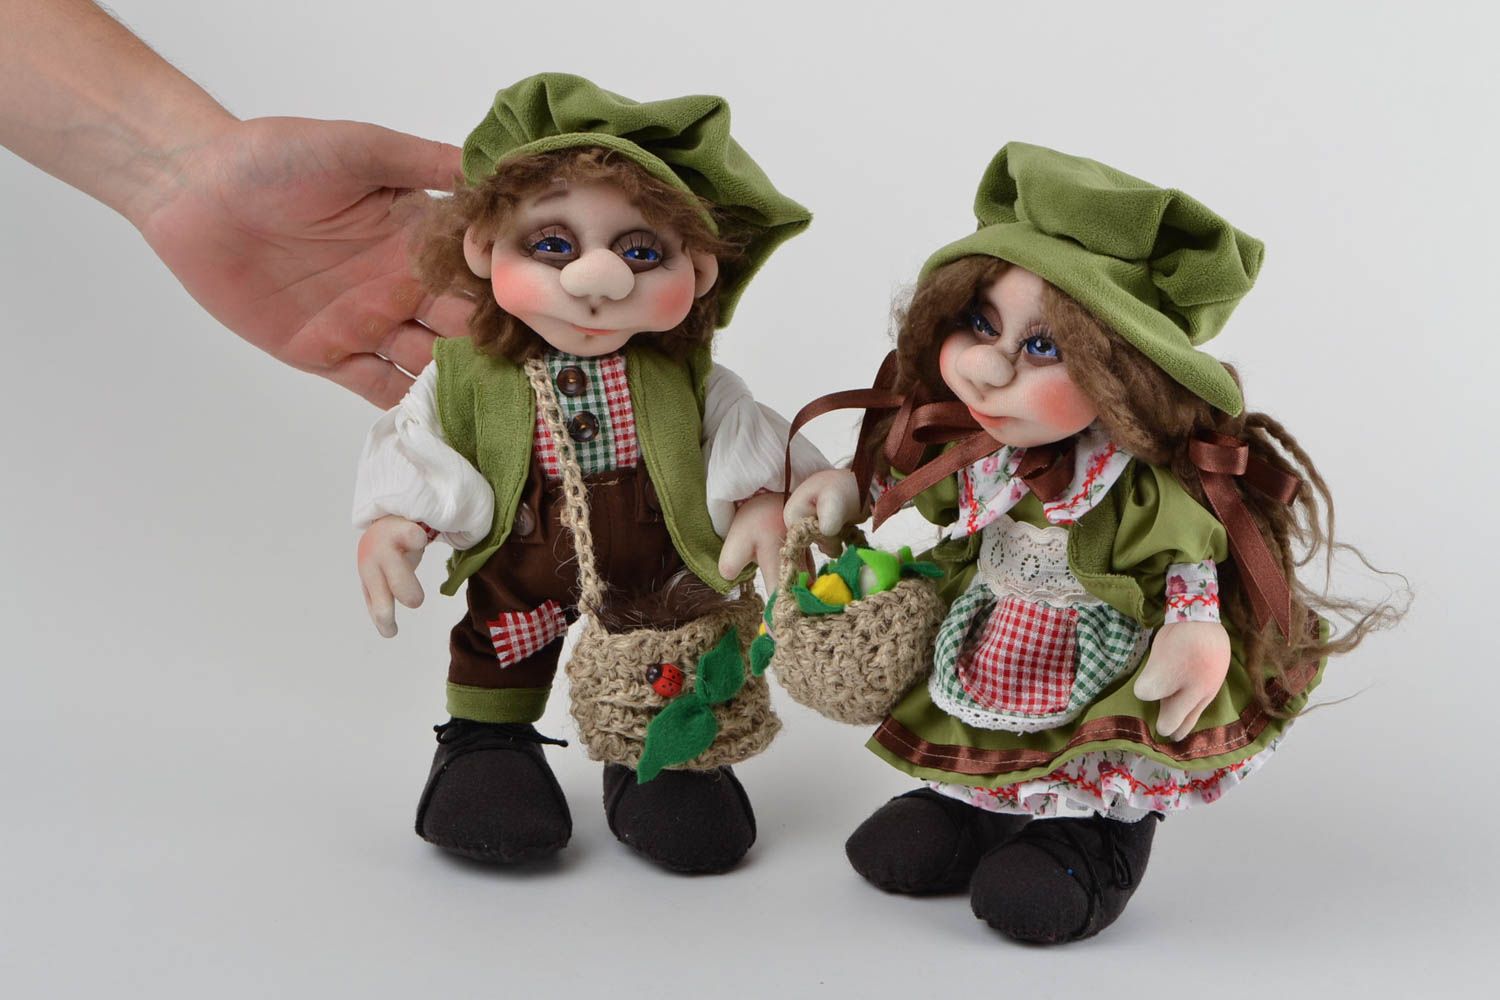 Handmade toys designer dolls set of 2 doll toys gifts for children home decor photo 2